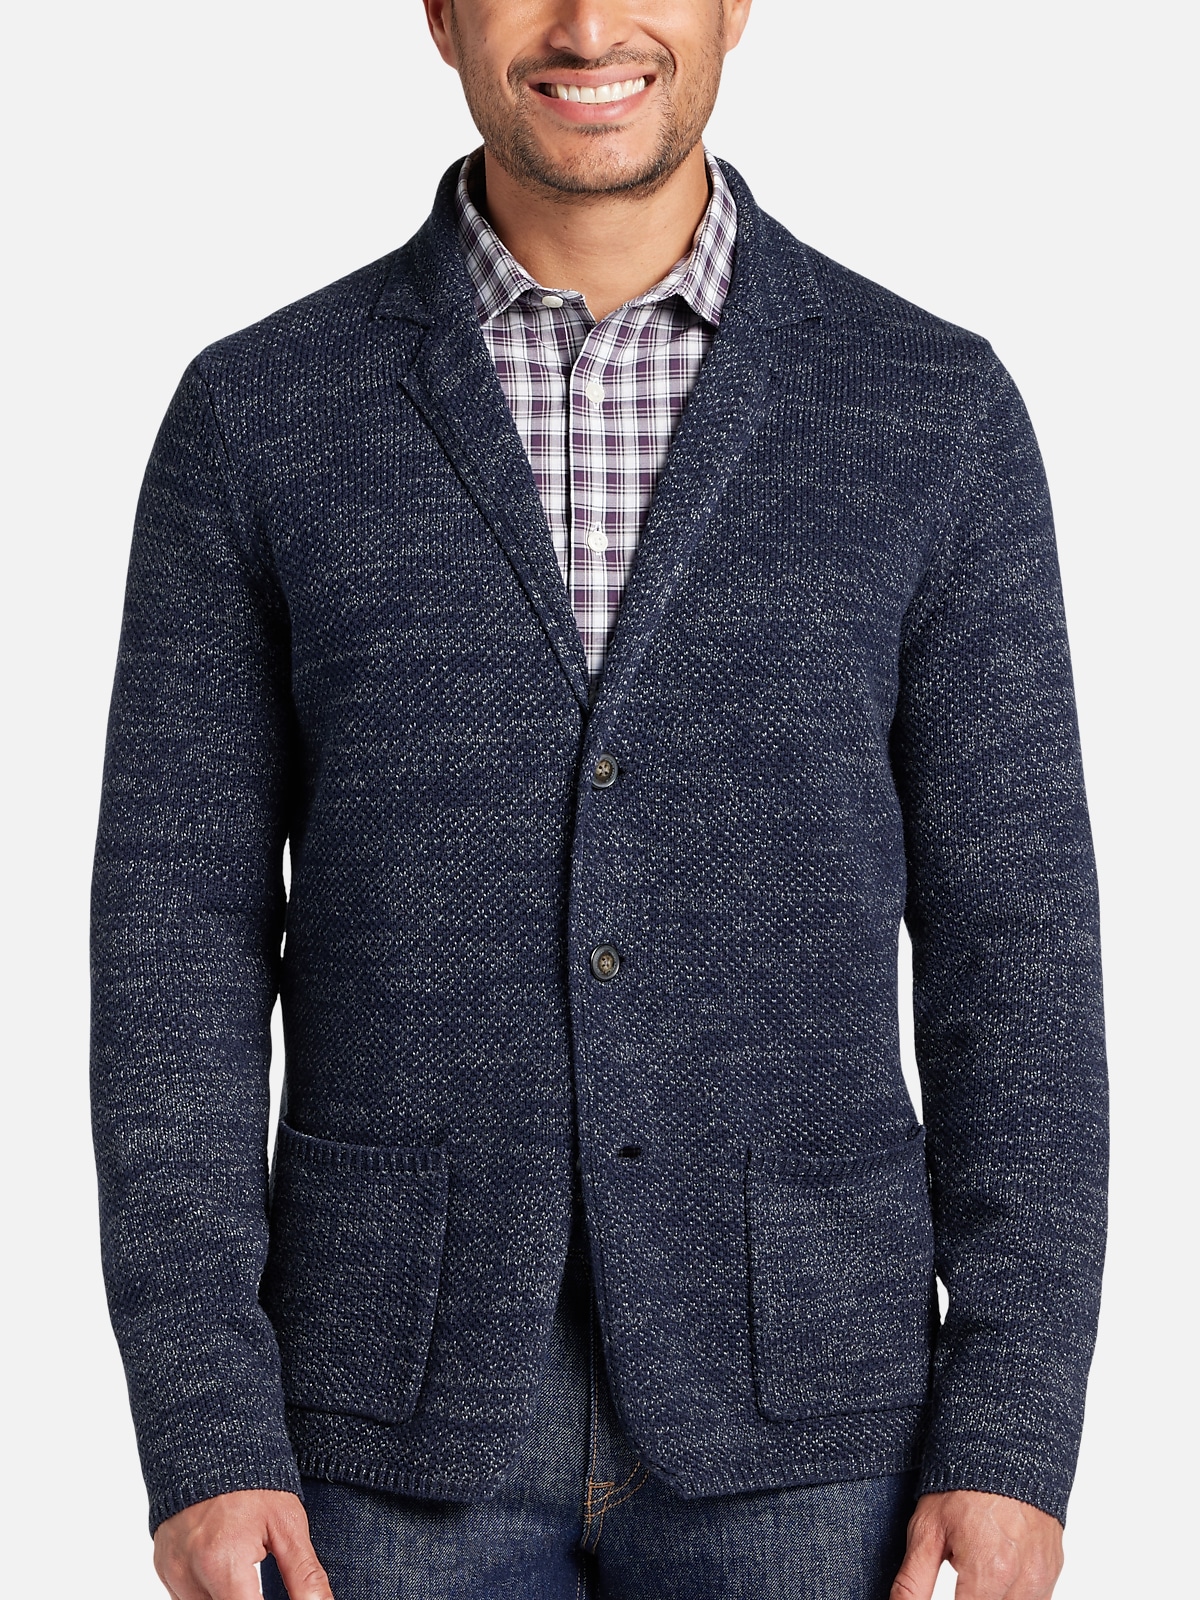 Joseph Abboud Modern Fit Sweater Blazer | All Sale| Men's Wearhouse